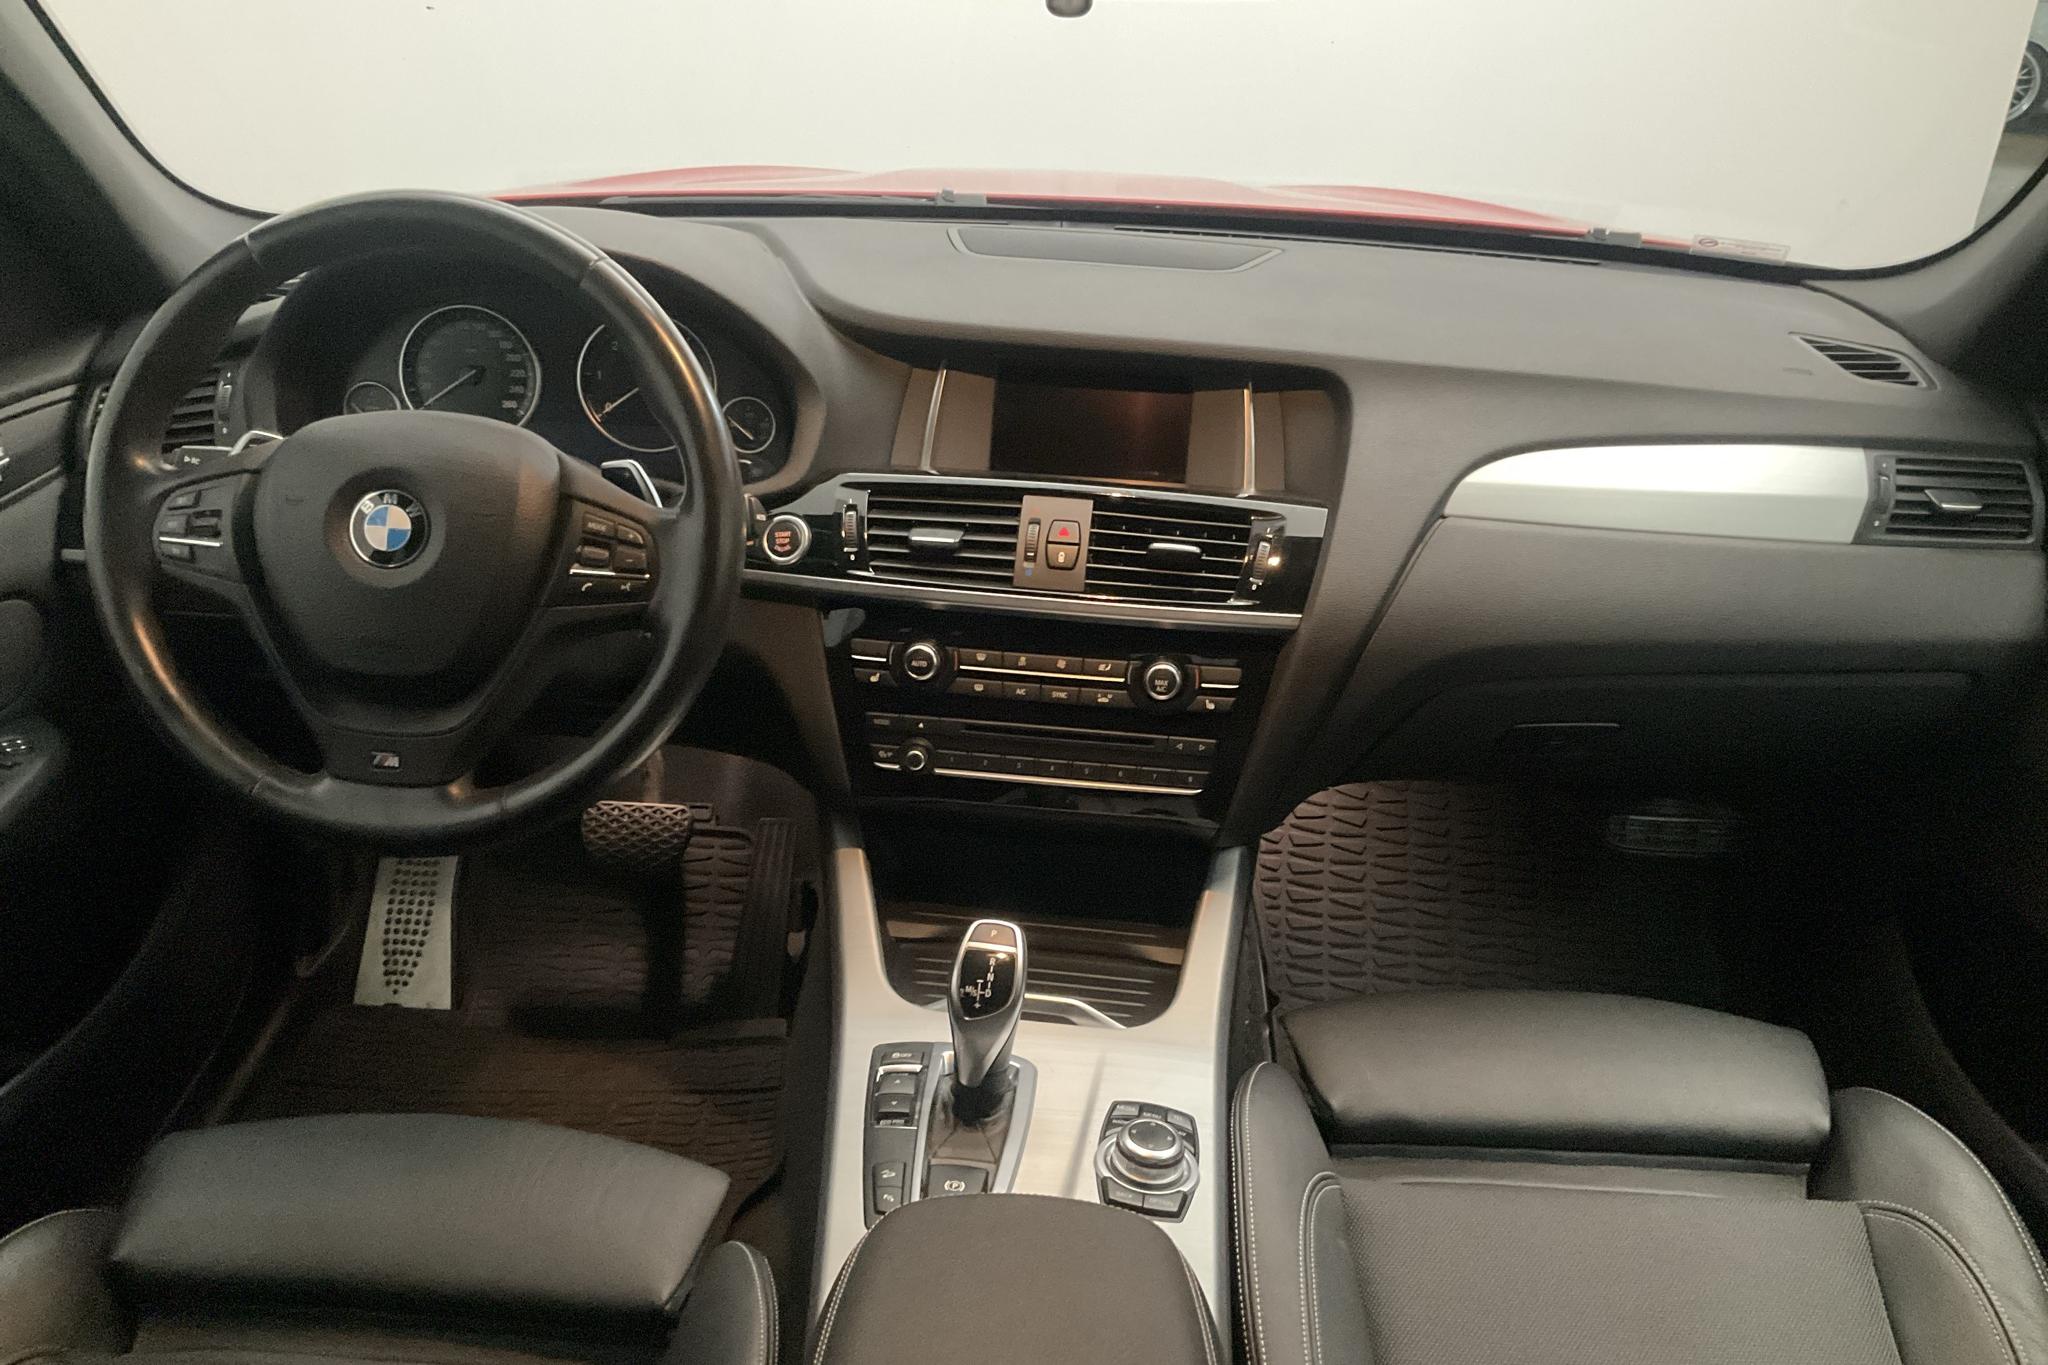 BMW X3 xDrive30d, F25 (258hk) - 101 690 km - Automatyczna - czerwony - 2015